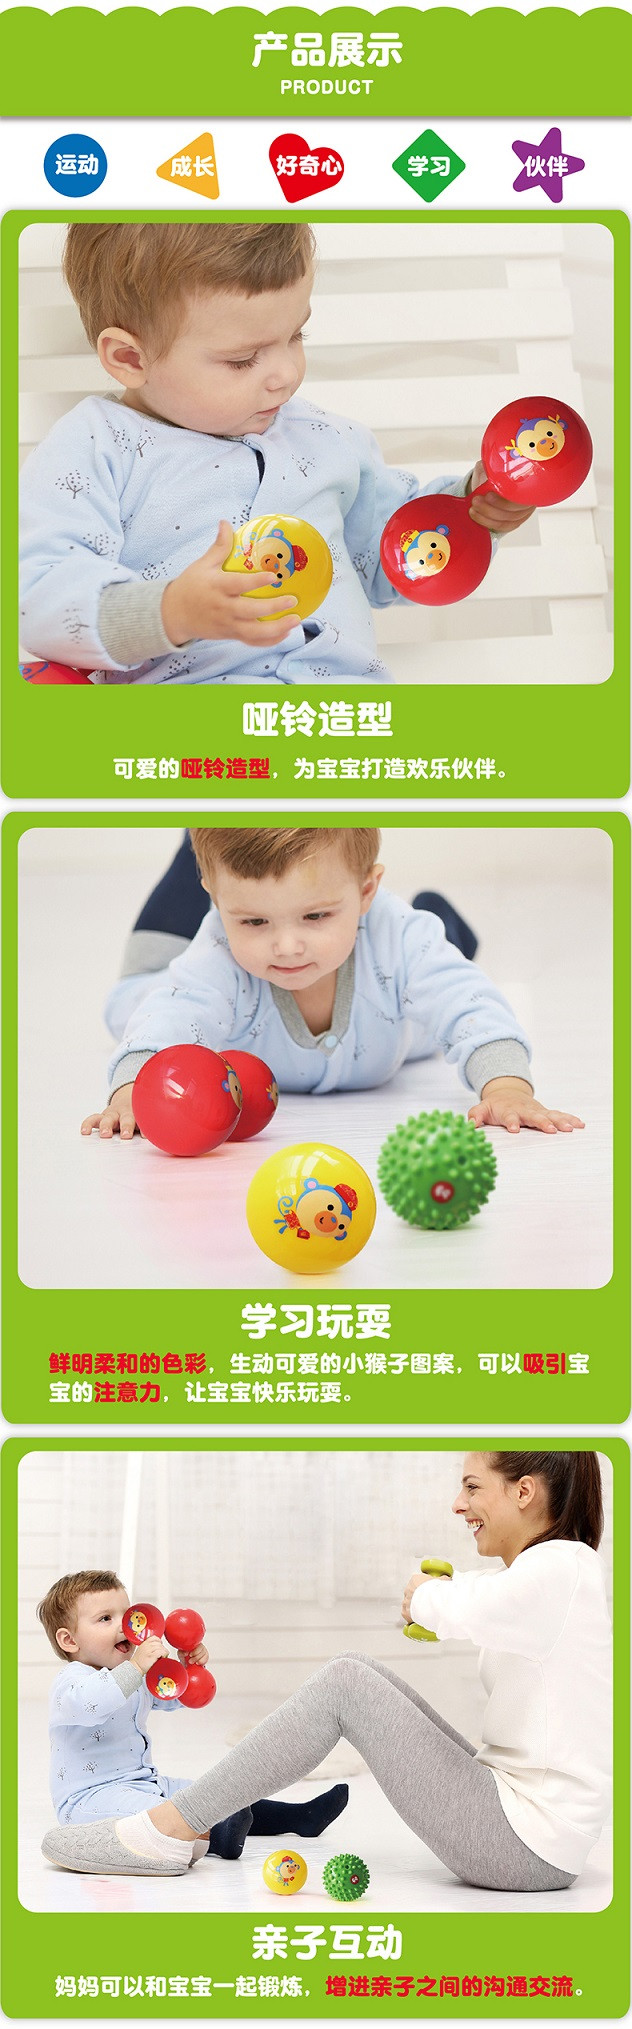 费雪(Fisher Price) 0-6月婴儿玩具球锻炼宝宝手部发育新生儿训练球套装